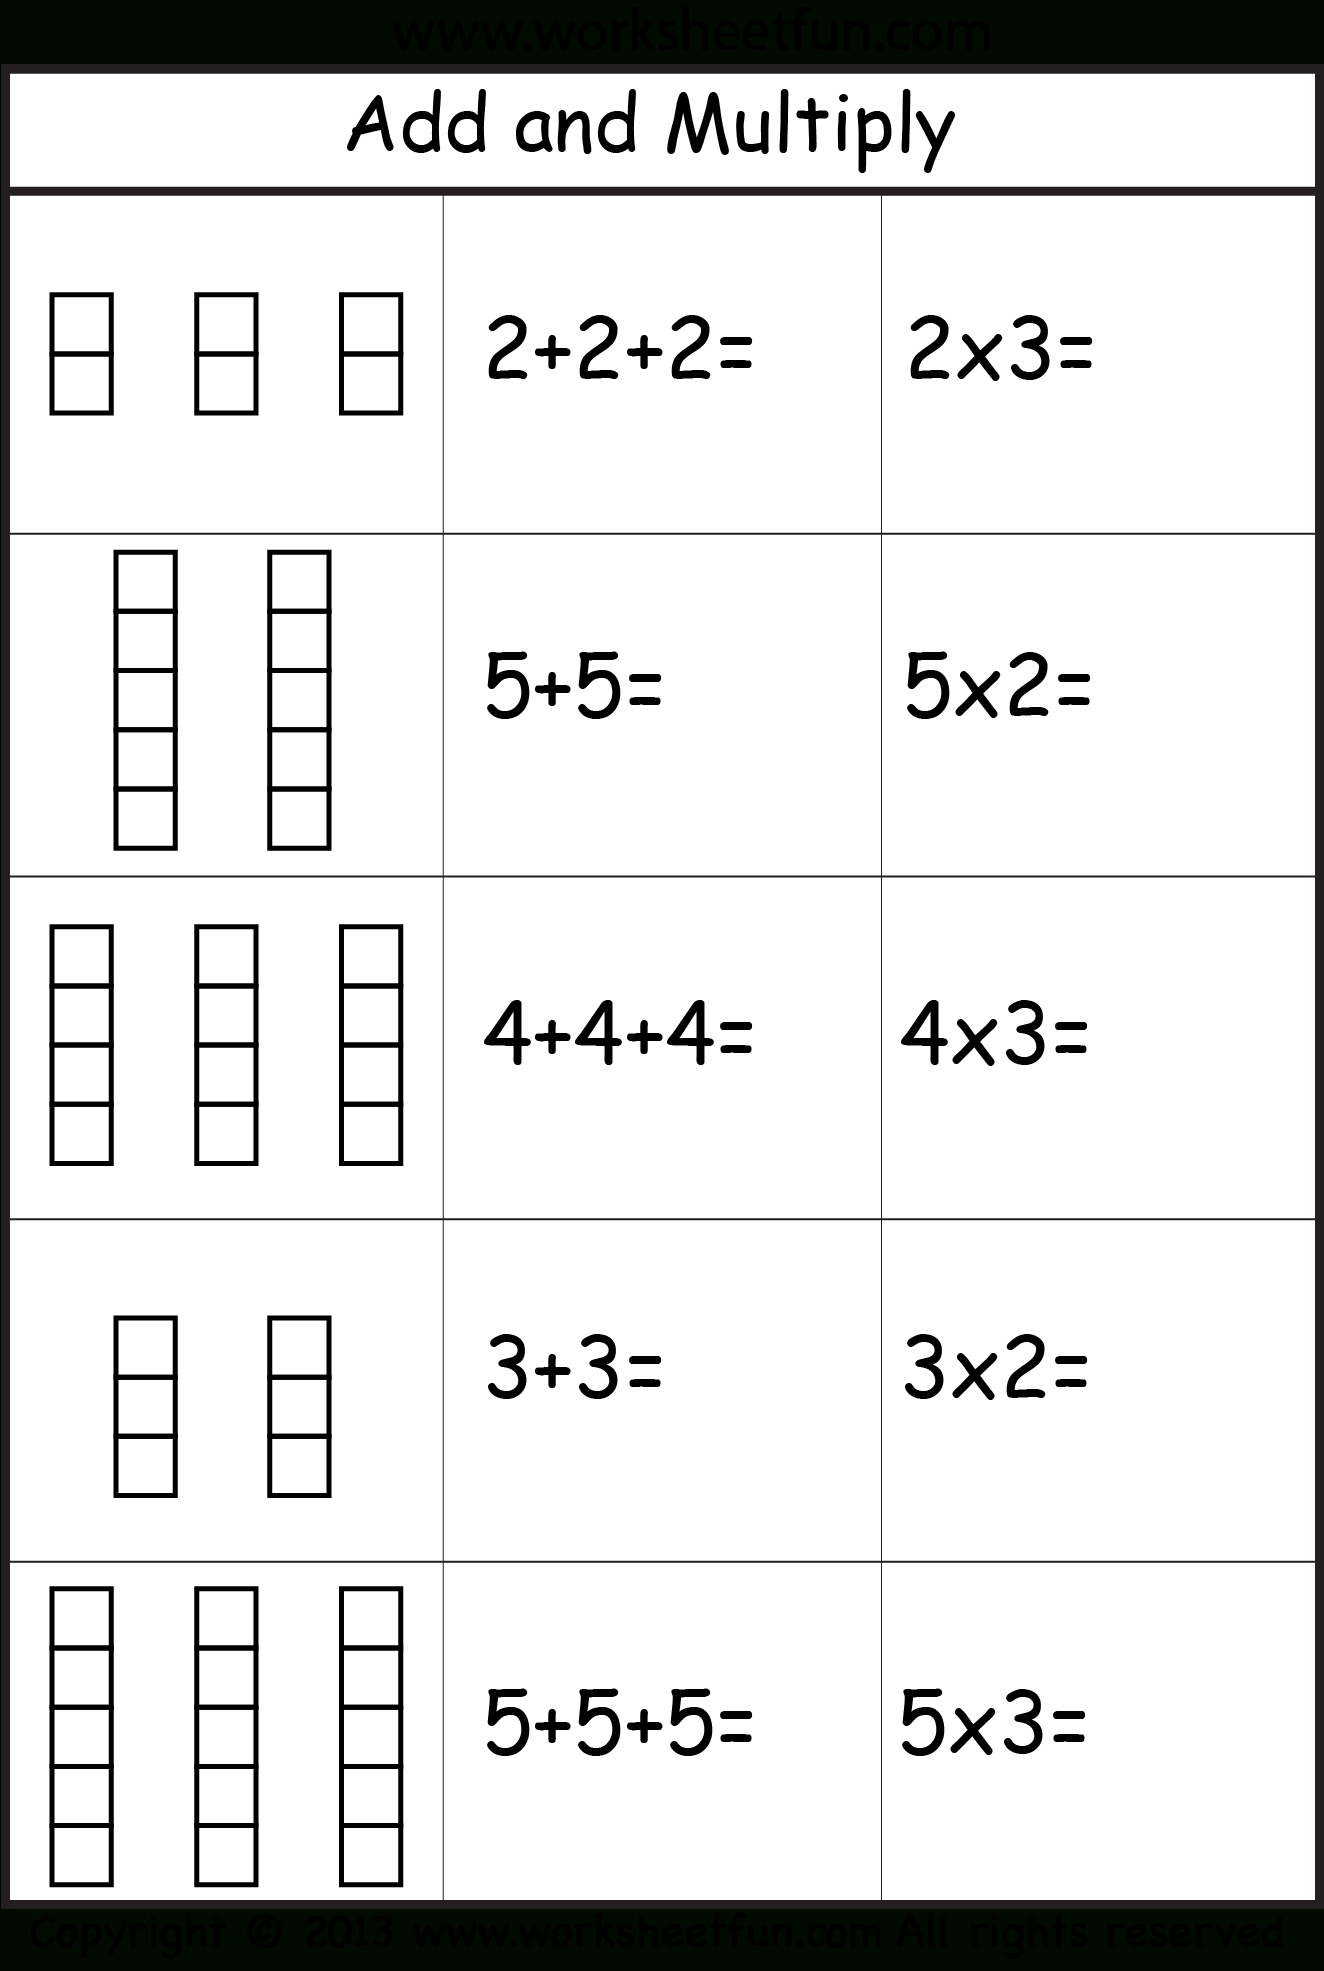 multiplication-arrays-repeated-addition-1-tmk-education-16-best-images-of-repeated-addition